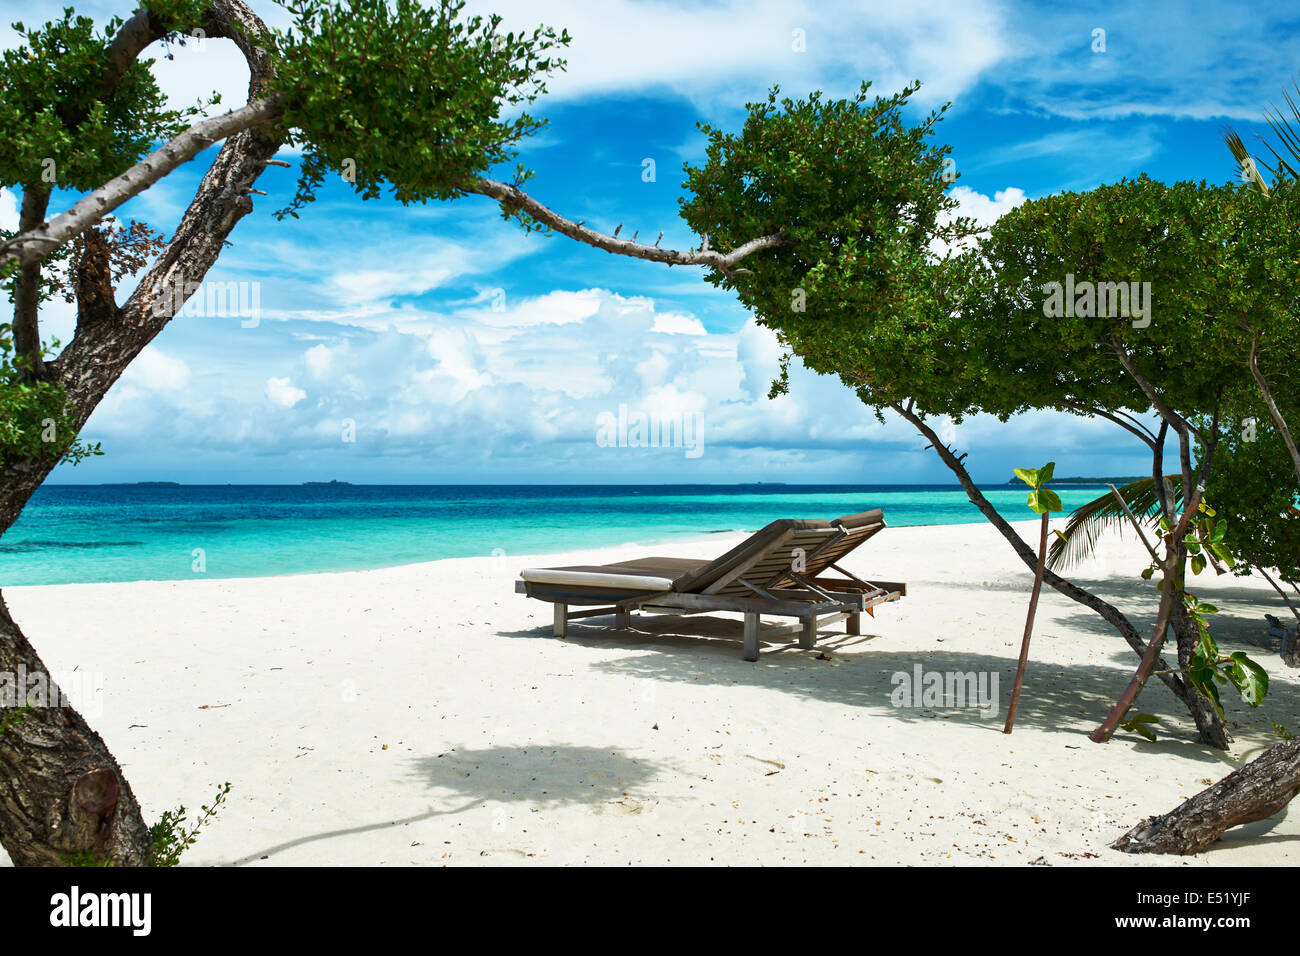 Beautiful beach at Maldives Stock Photo